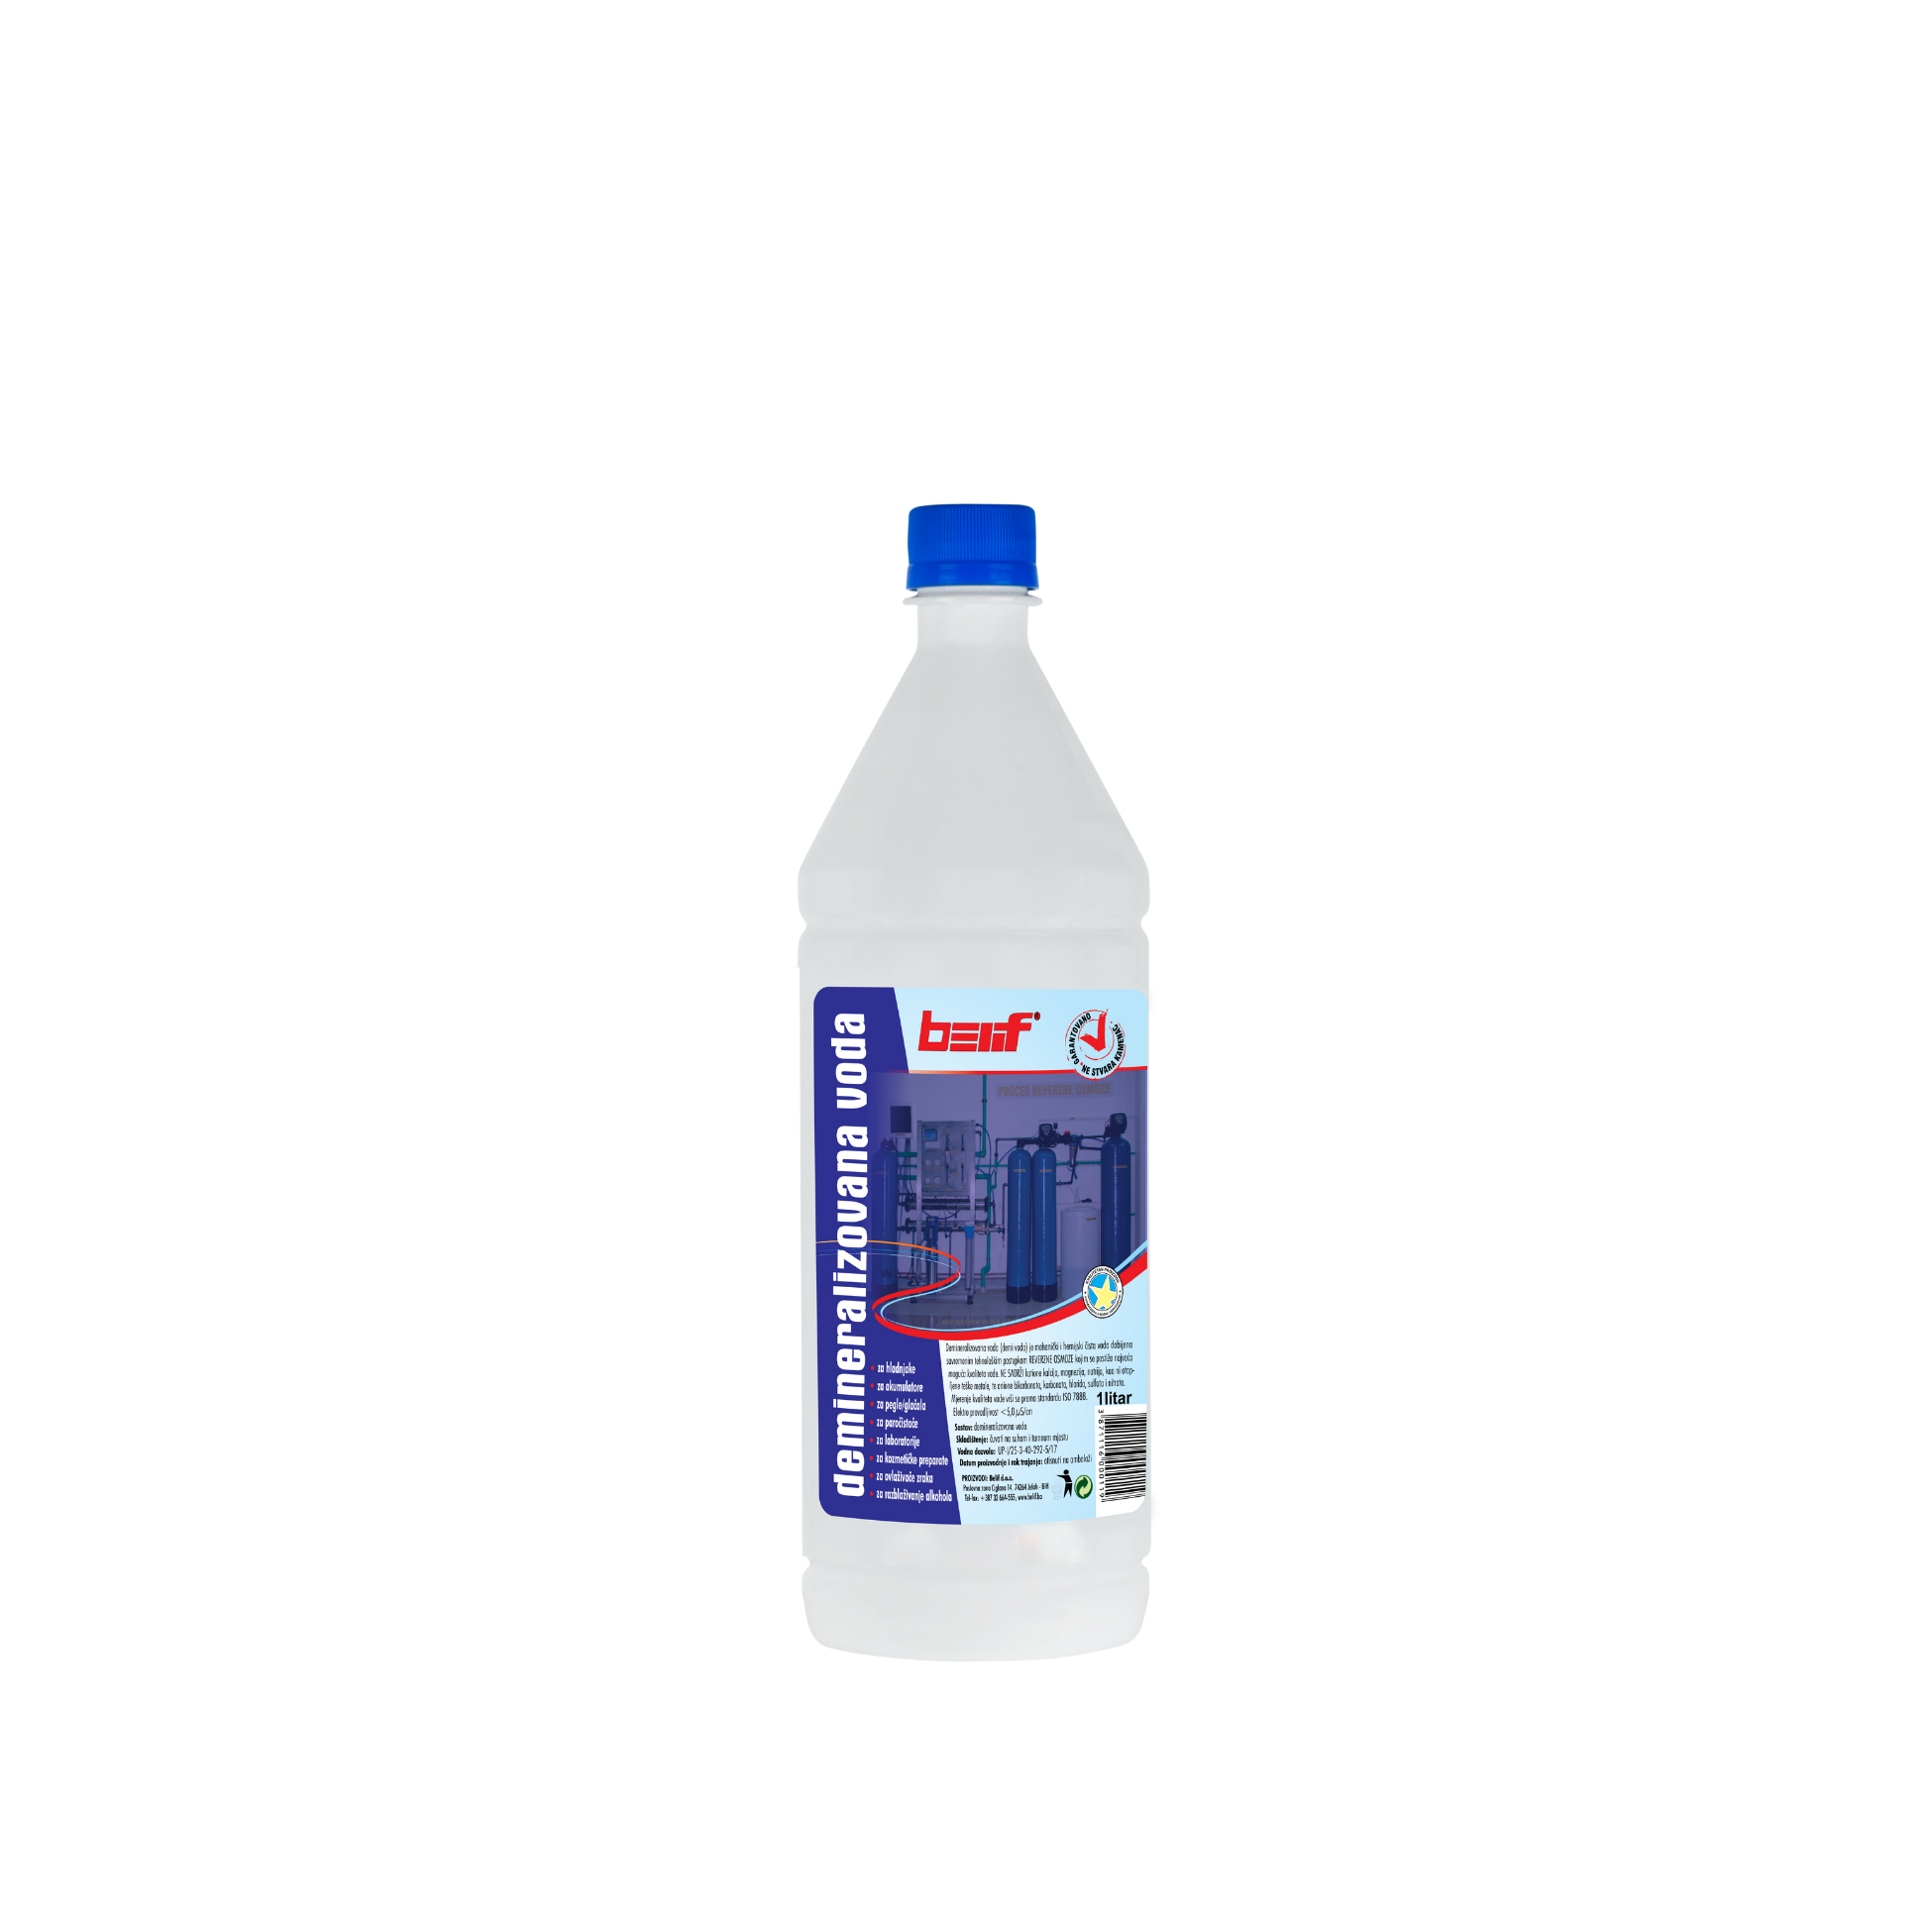 Demineralizovana voda 1L